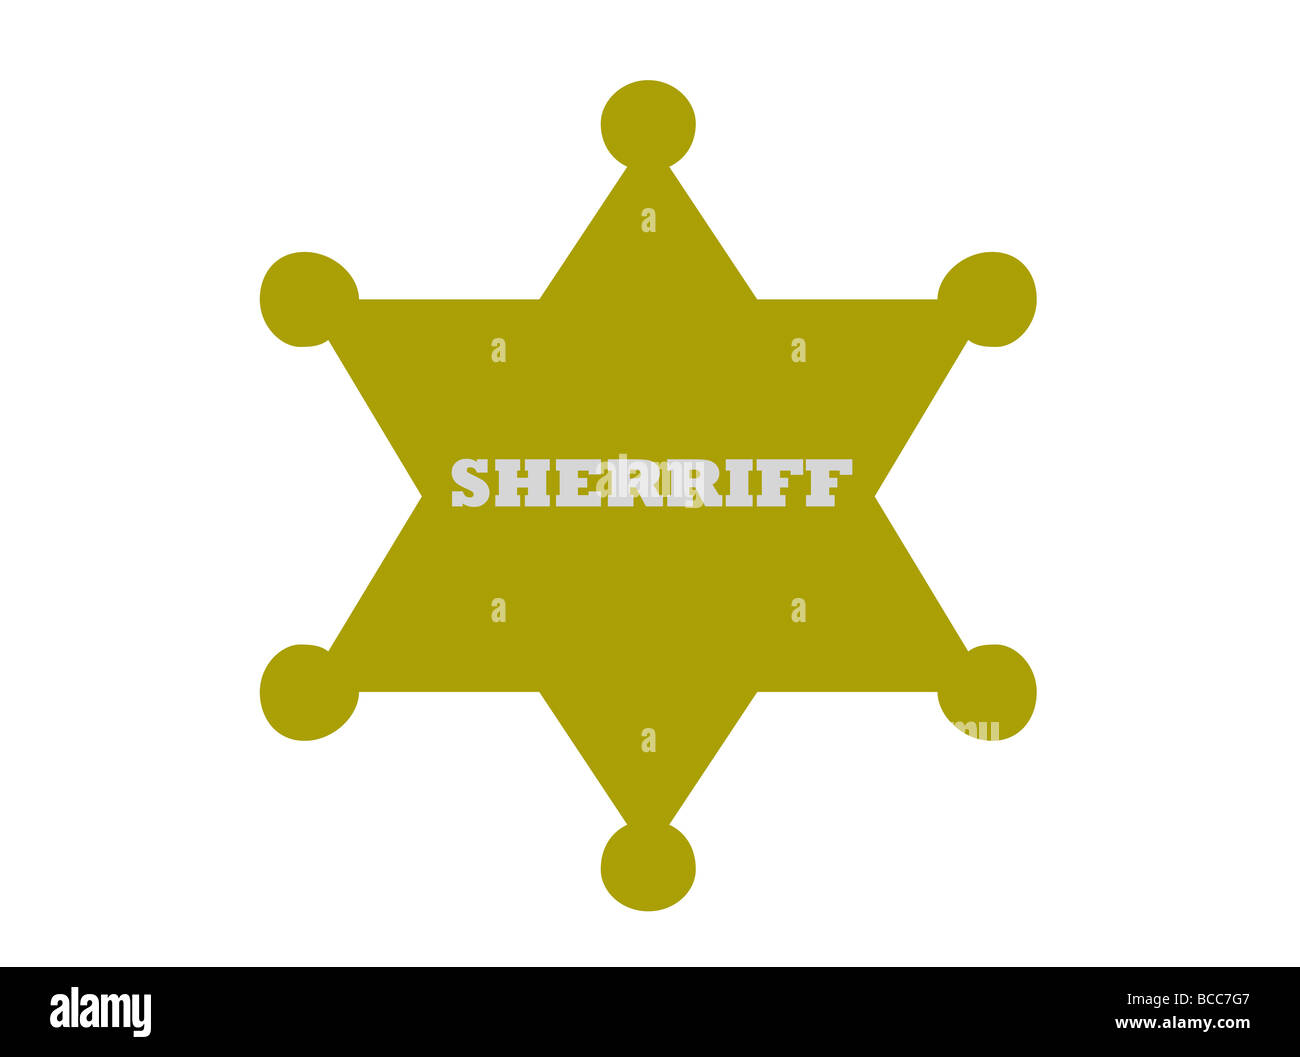 Sherriff badge isolated on white background Stock Photo